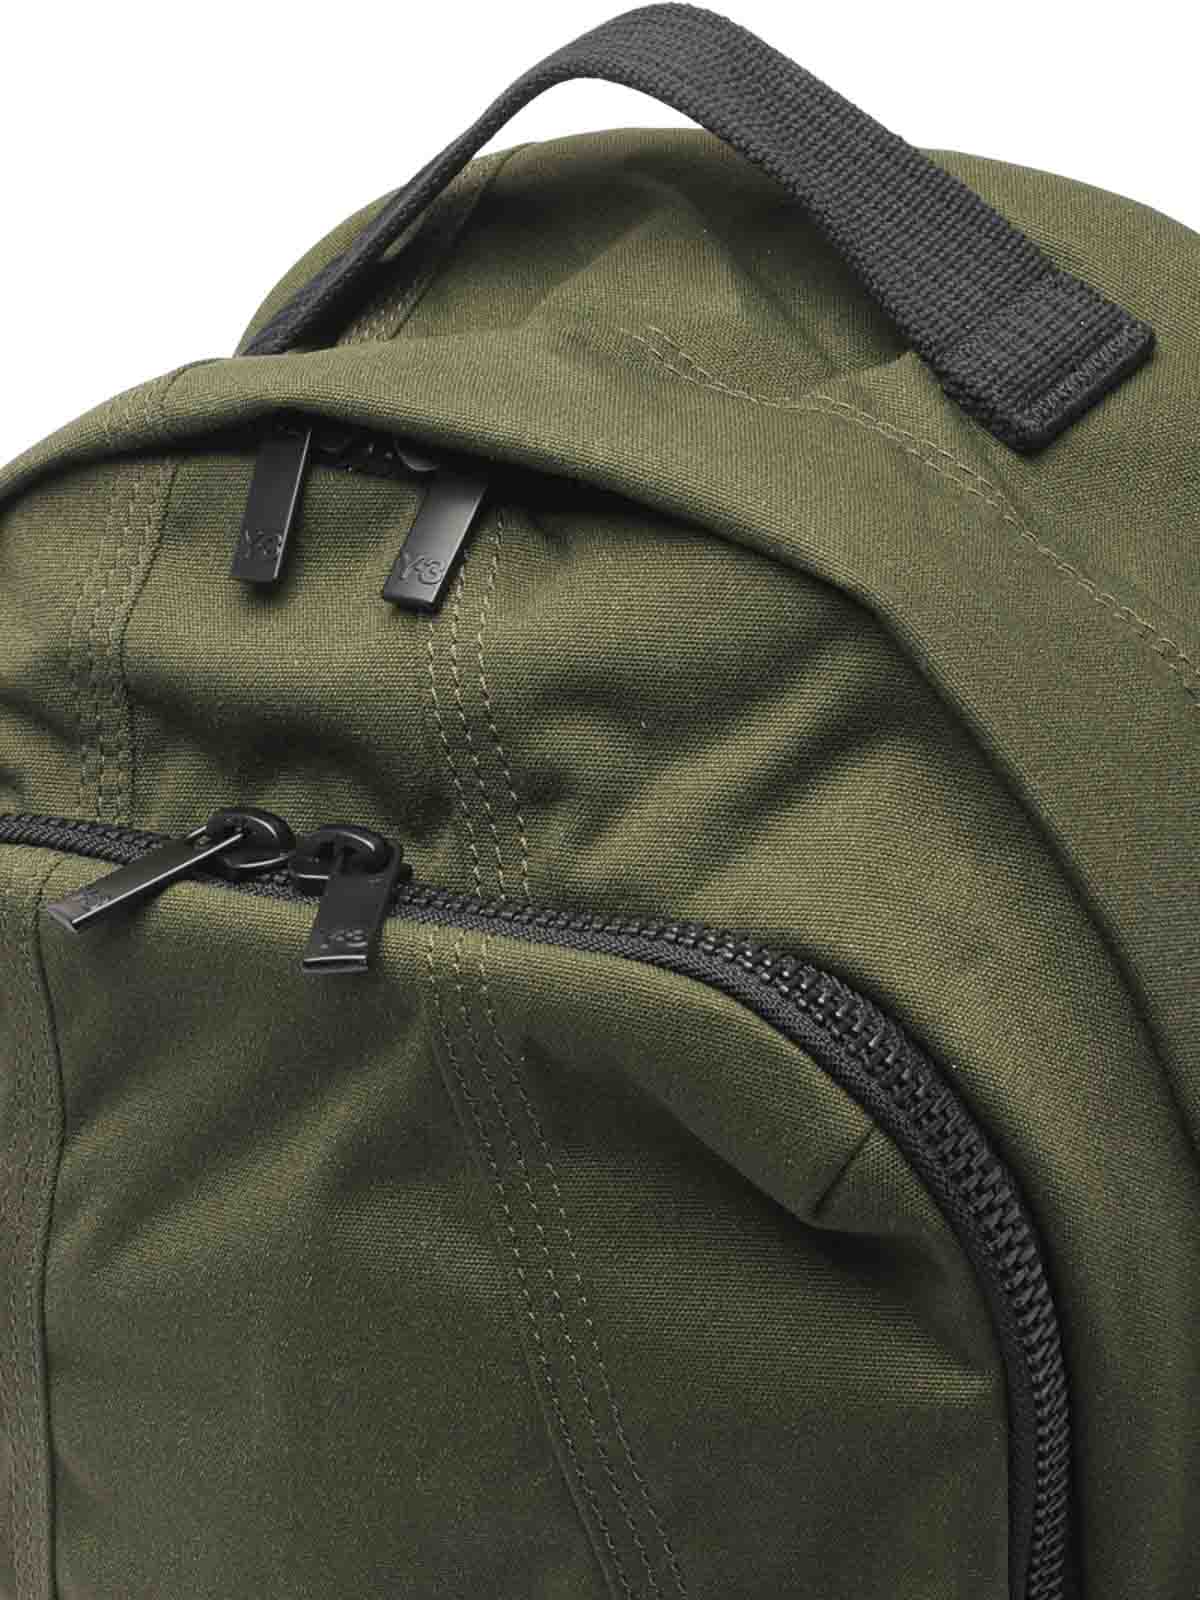 Backpacks Y-3 - Cargo backpack - IJ9883 | Shop online at THEBS [iKRIX]